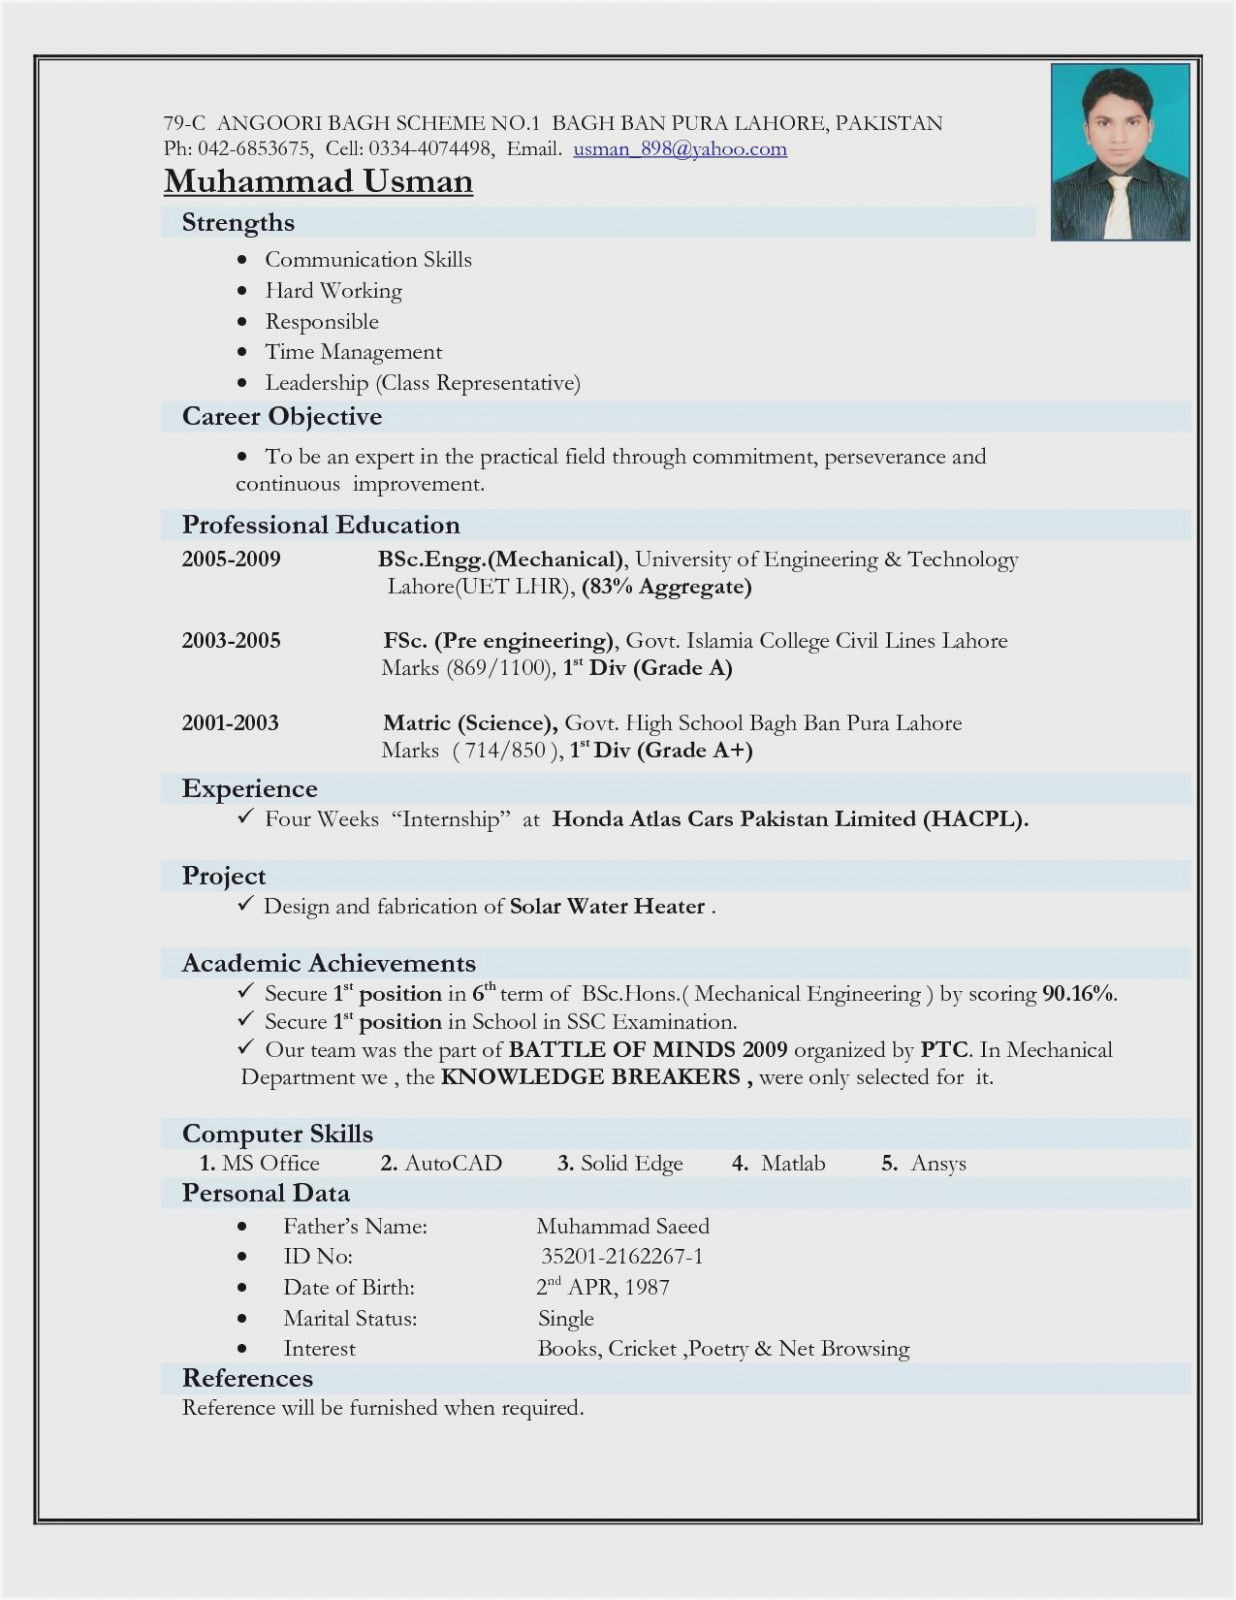 Sample Resume for Civil Engineer Fresher Pdf 12 Engineer Resume Template Doc Job Resume format, Resume format …